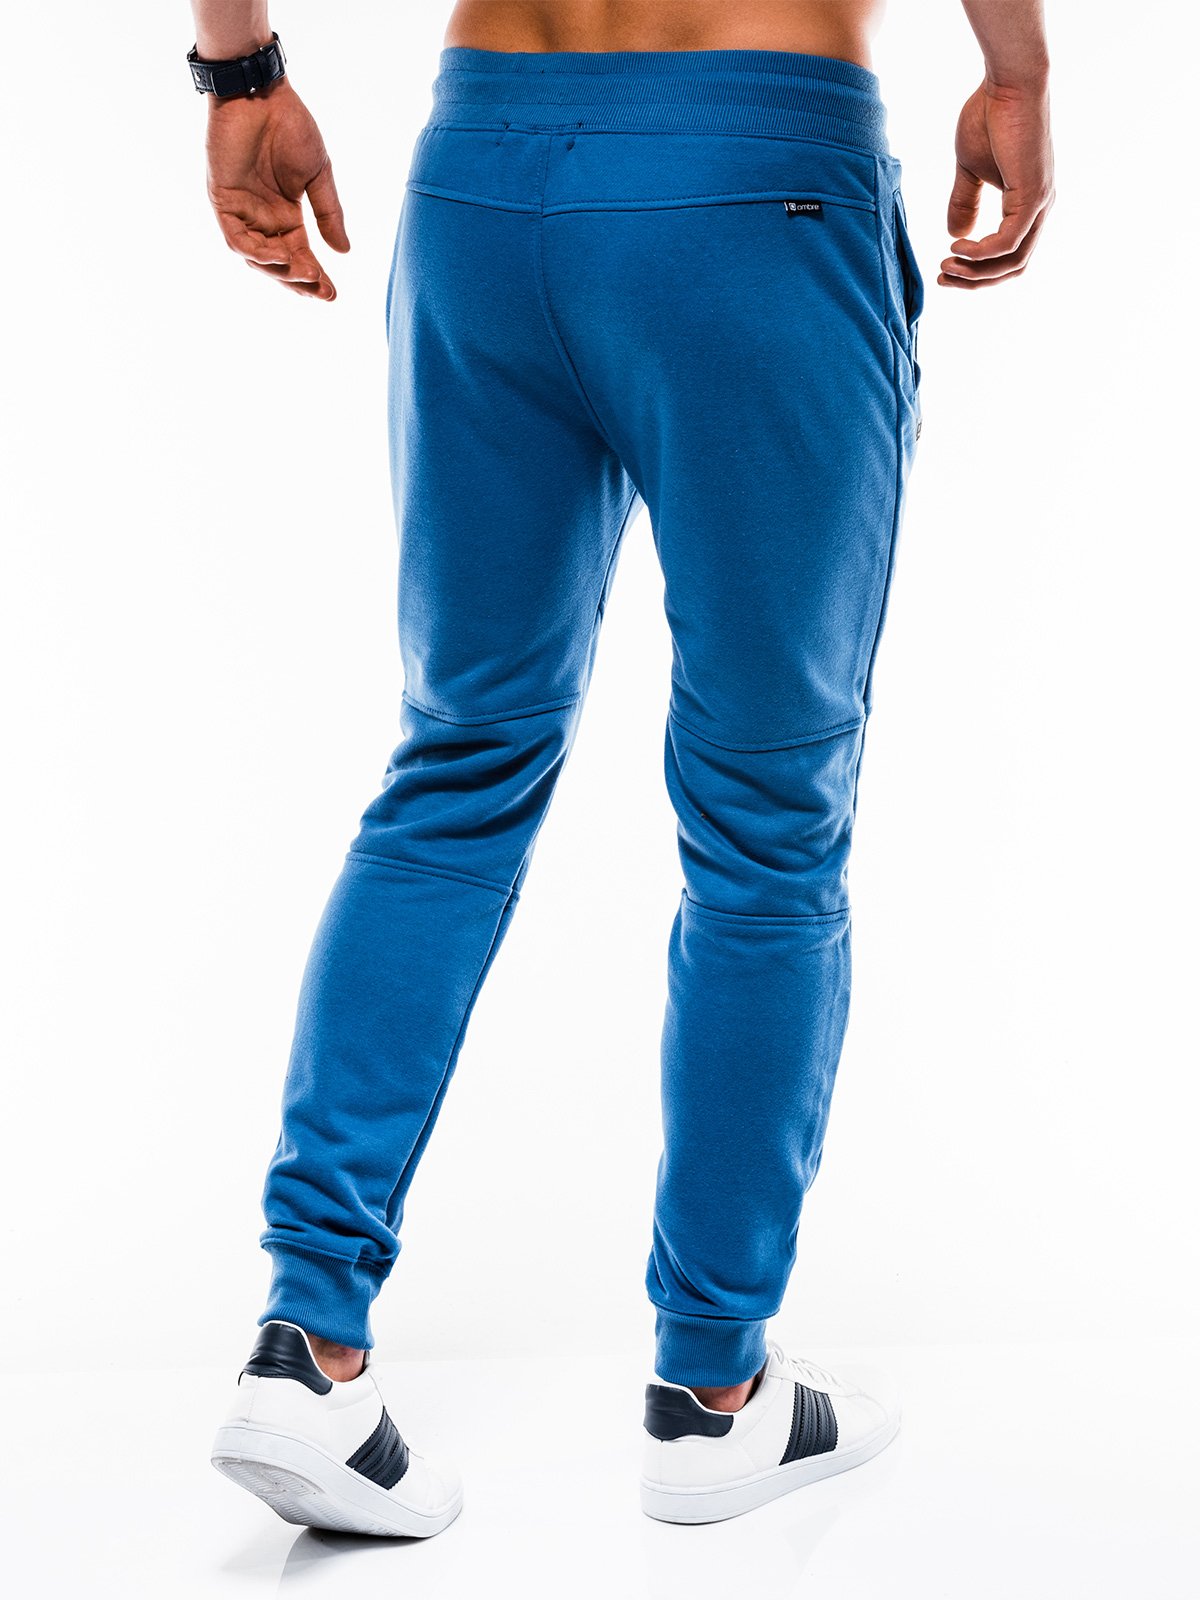 Men's sweatpants P743 - blue | MODONE wholesale - Clothing For Men